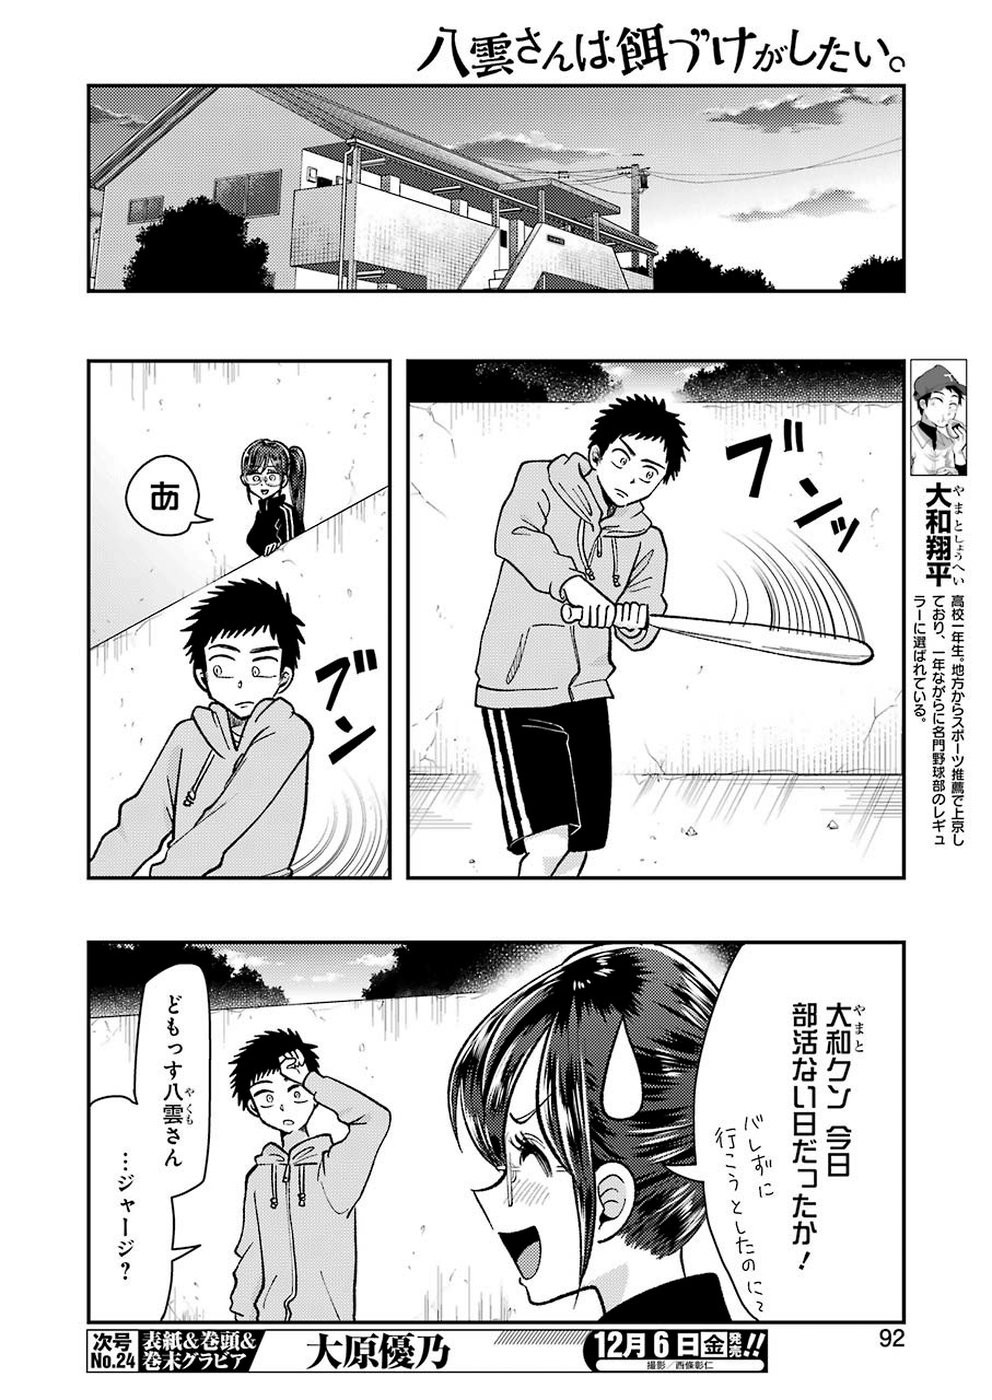 Yakumo-san wa Edzuke ga Shitai. - Chapter 061 - Page 4